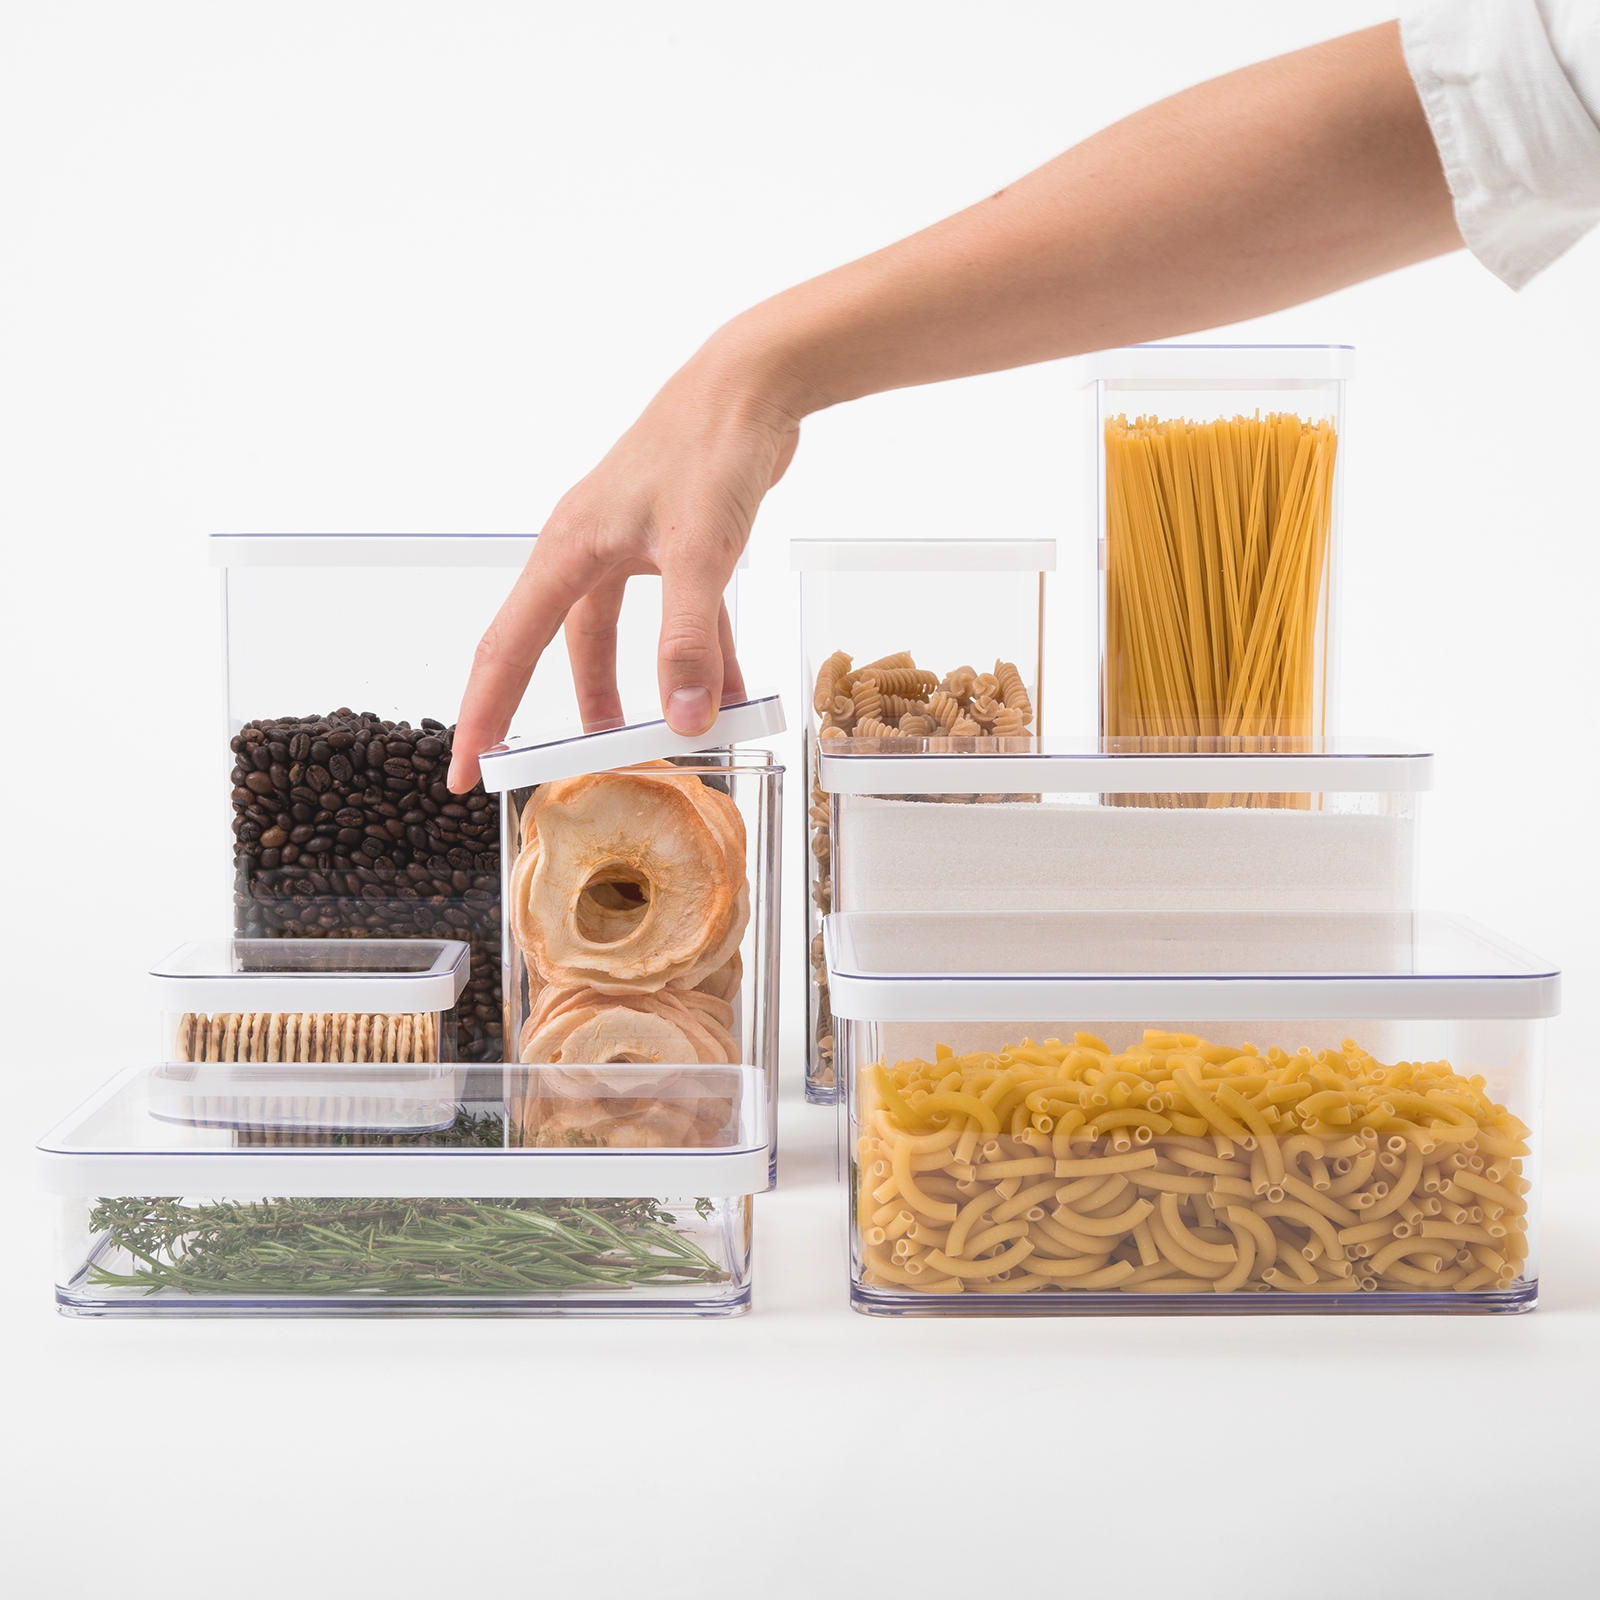 pojemniki plastikowe na ywno - skuteczne przechowywanie jedzenia w pojemnikach dla lepszej wygody i oszczdnoci czasu